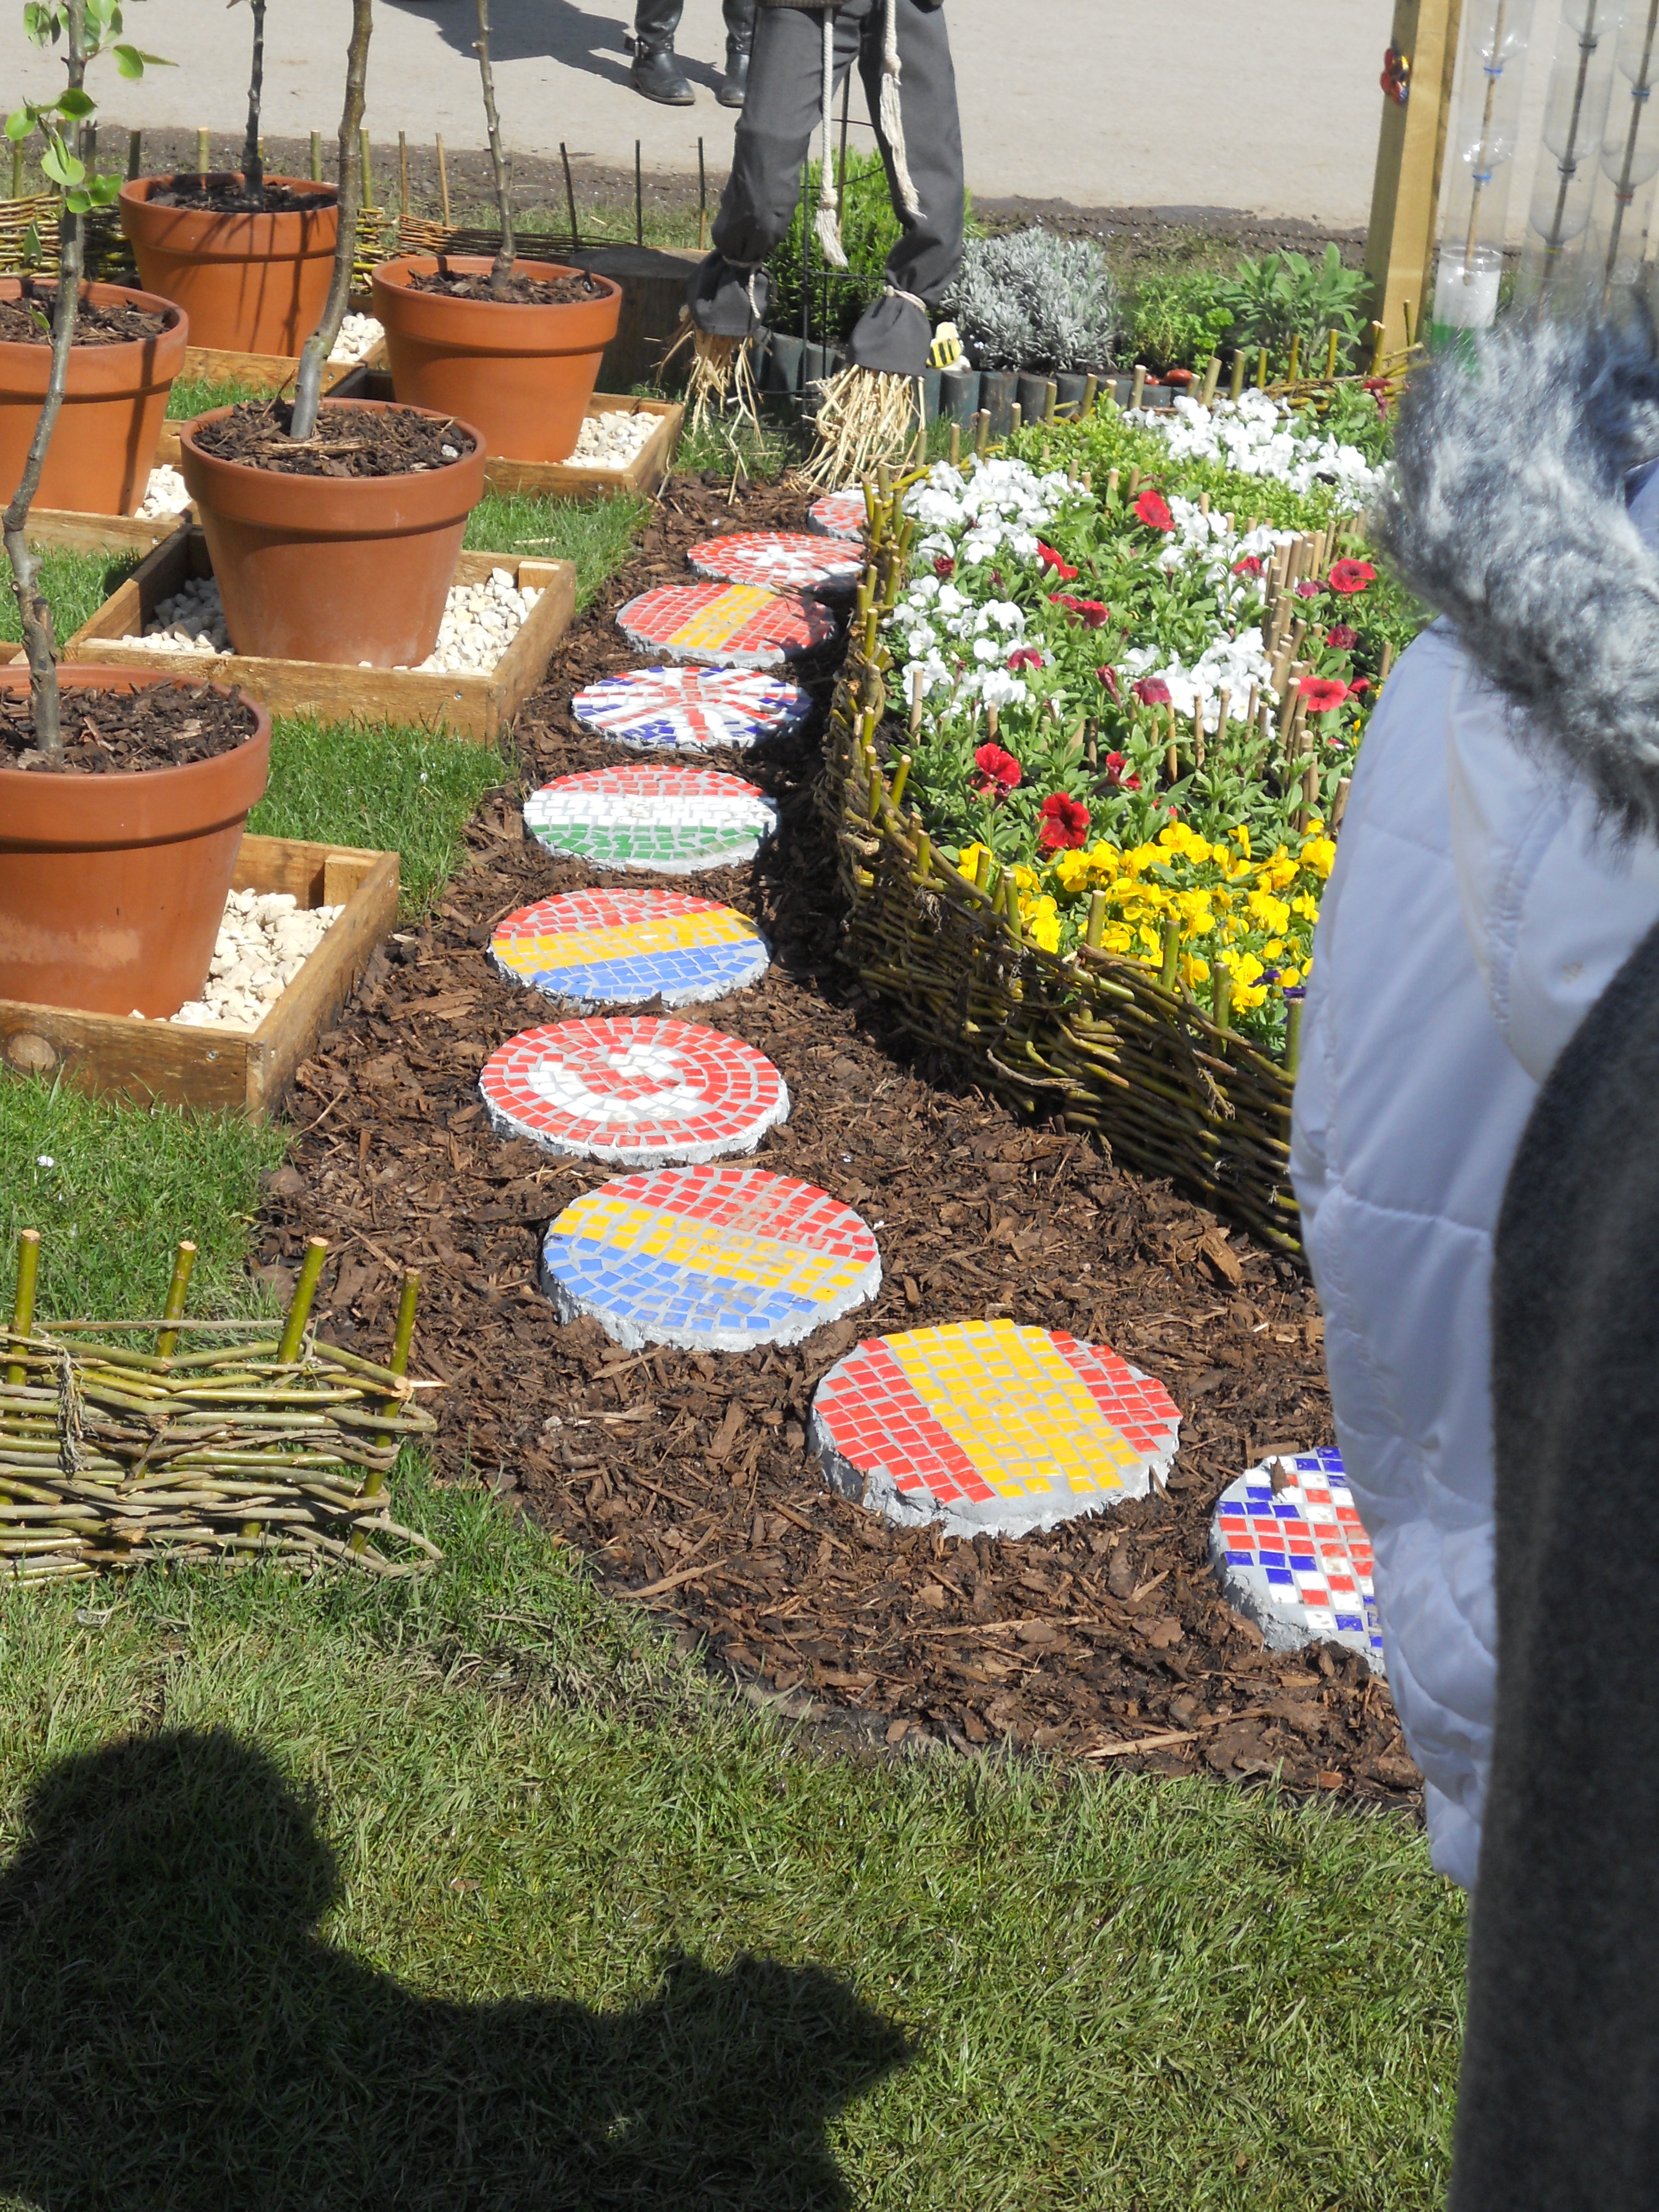 Student's Garden at Malvern Spring Show